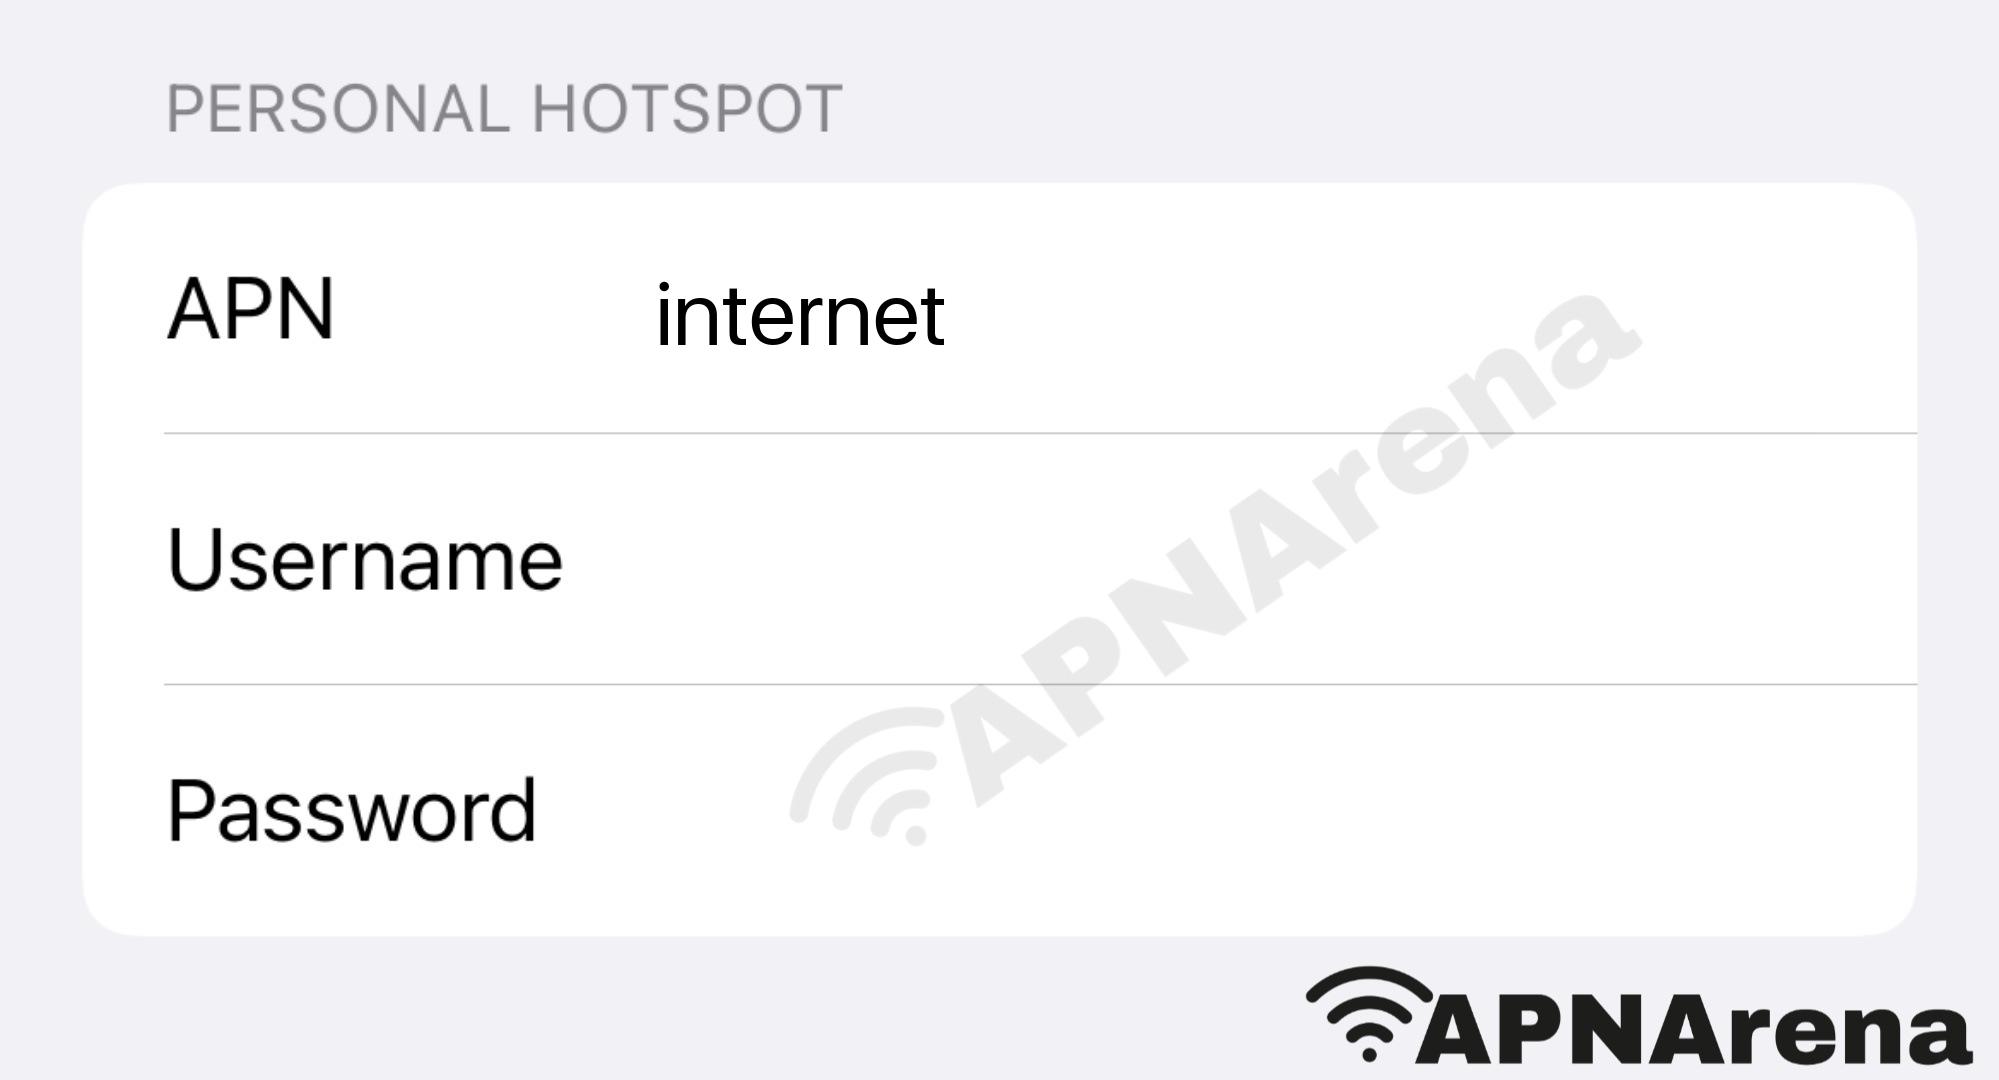 MetroPCS Personal Hotspot Settings for iPhone